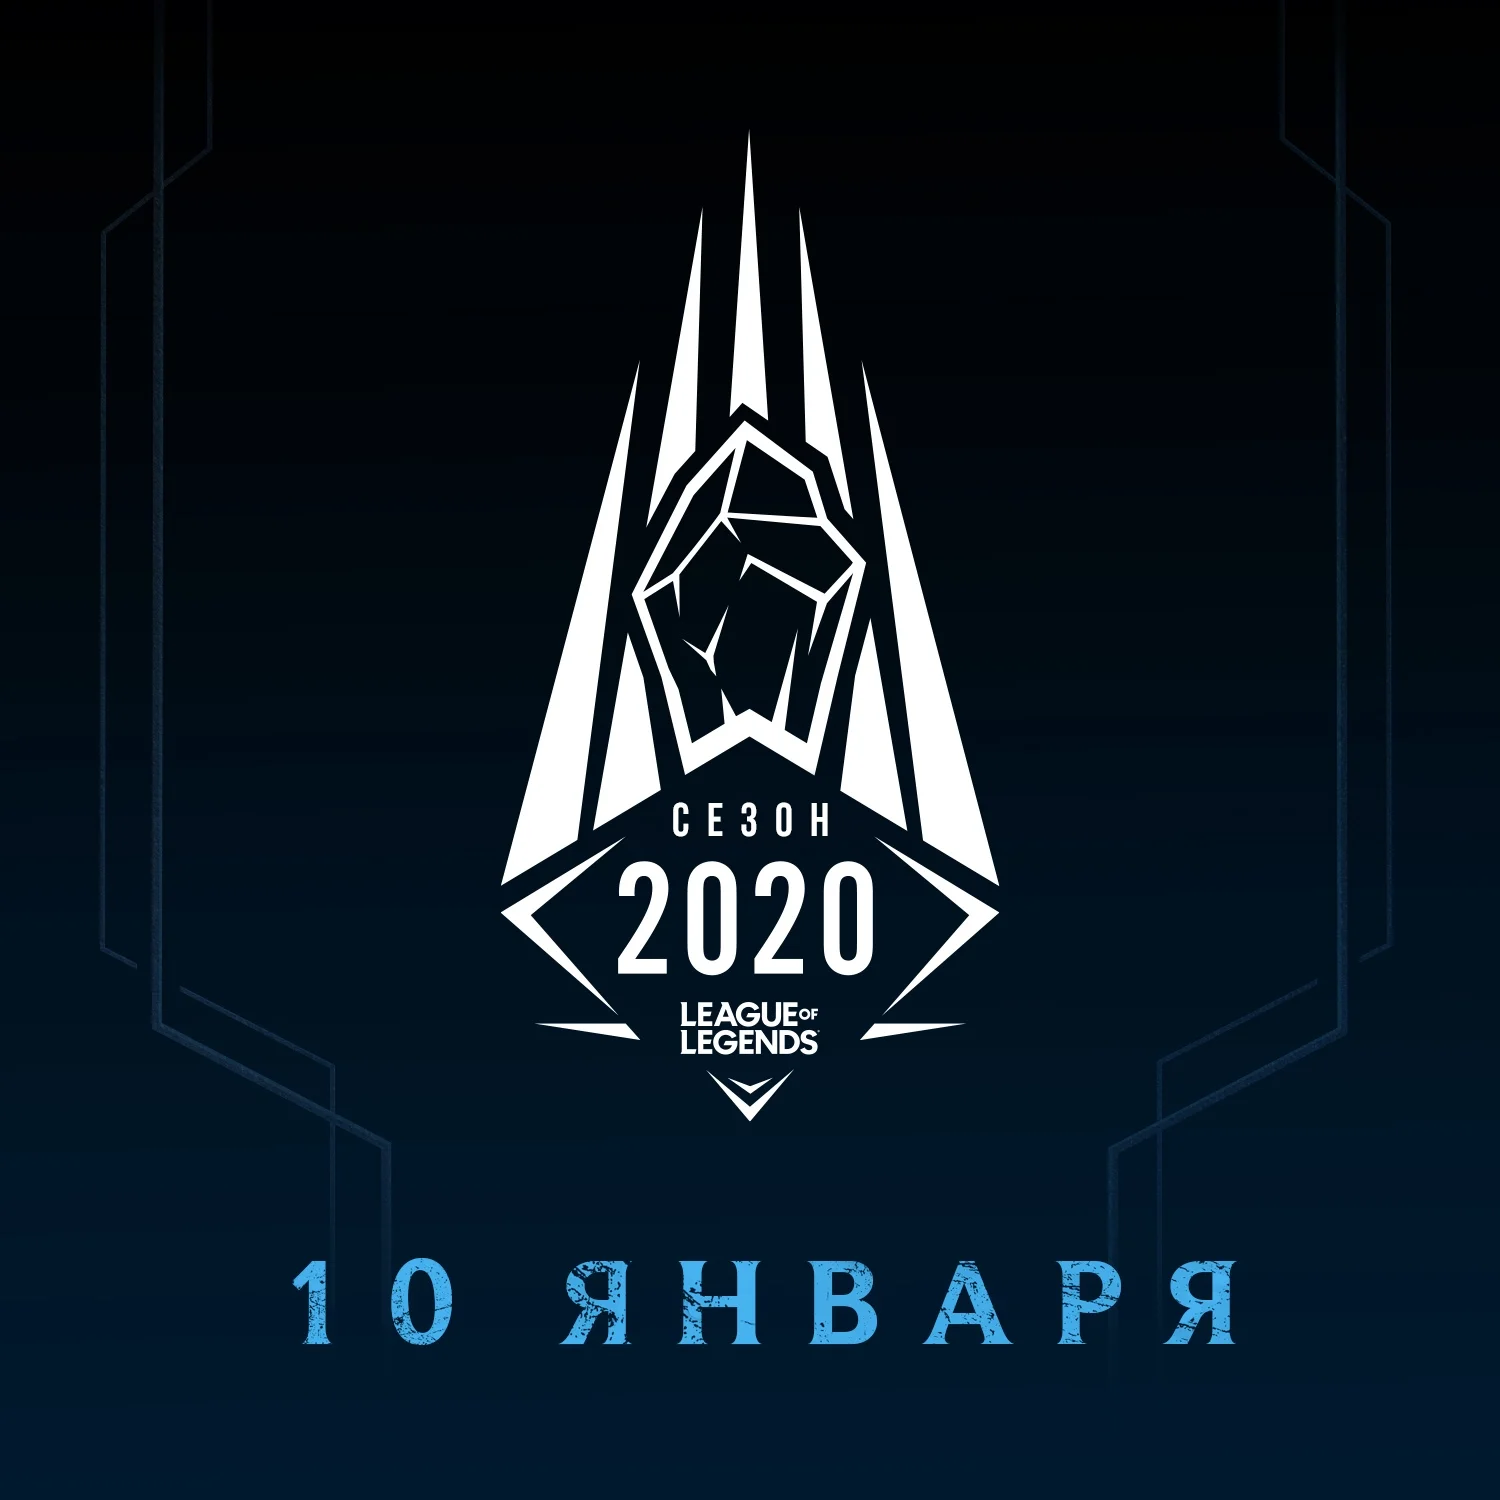 Сезон 2020 стартует в League of Legends уже 10 января - фото 2